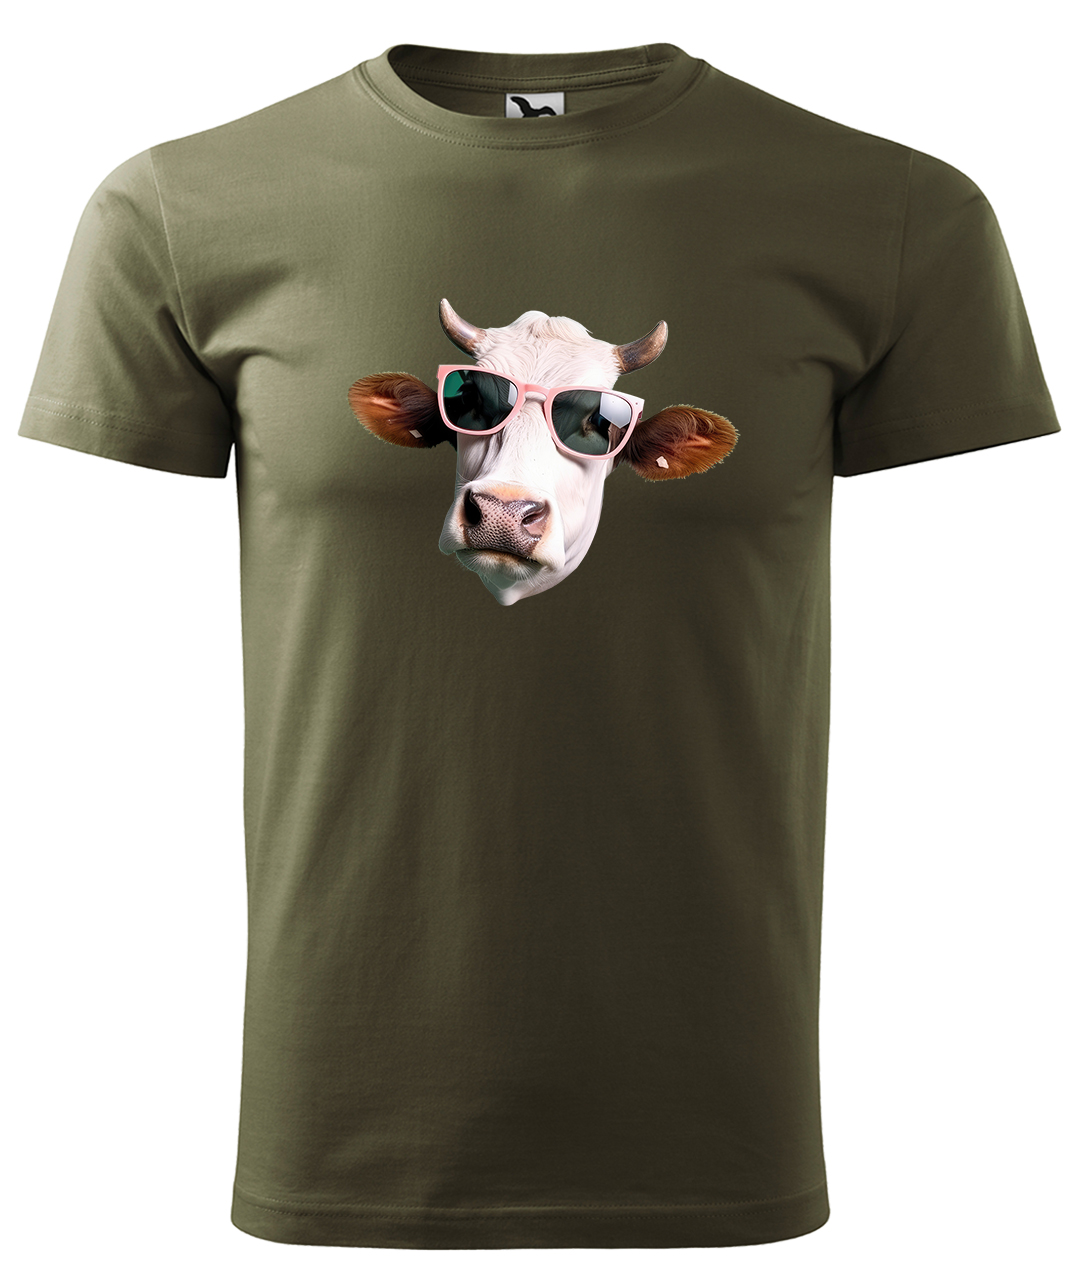 Dětské tričko s krávou - Kráva v brýlích Velikost: 8 let / 134 cm, Barva: Military (69), Délka rukávu: Krátký rukáv